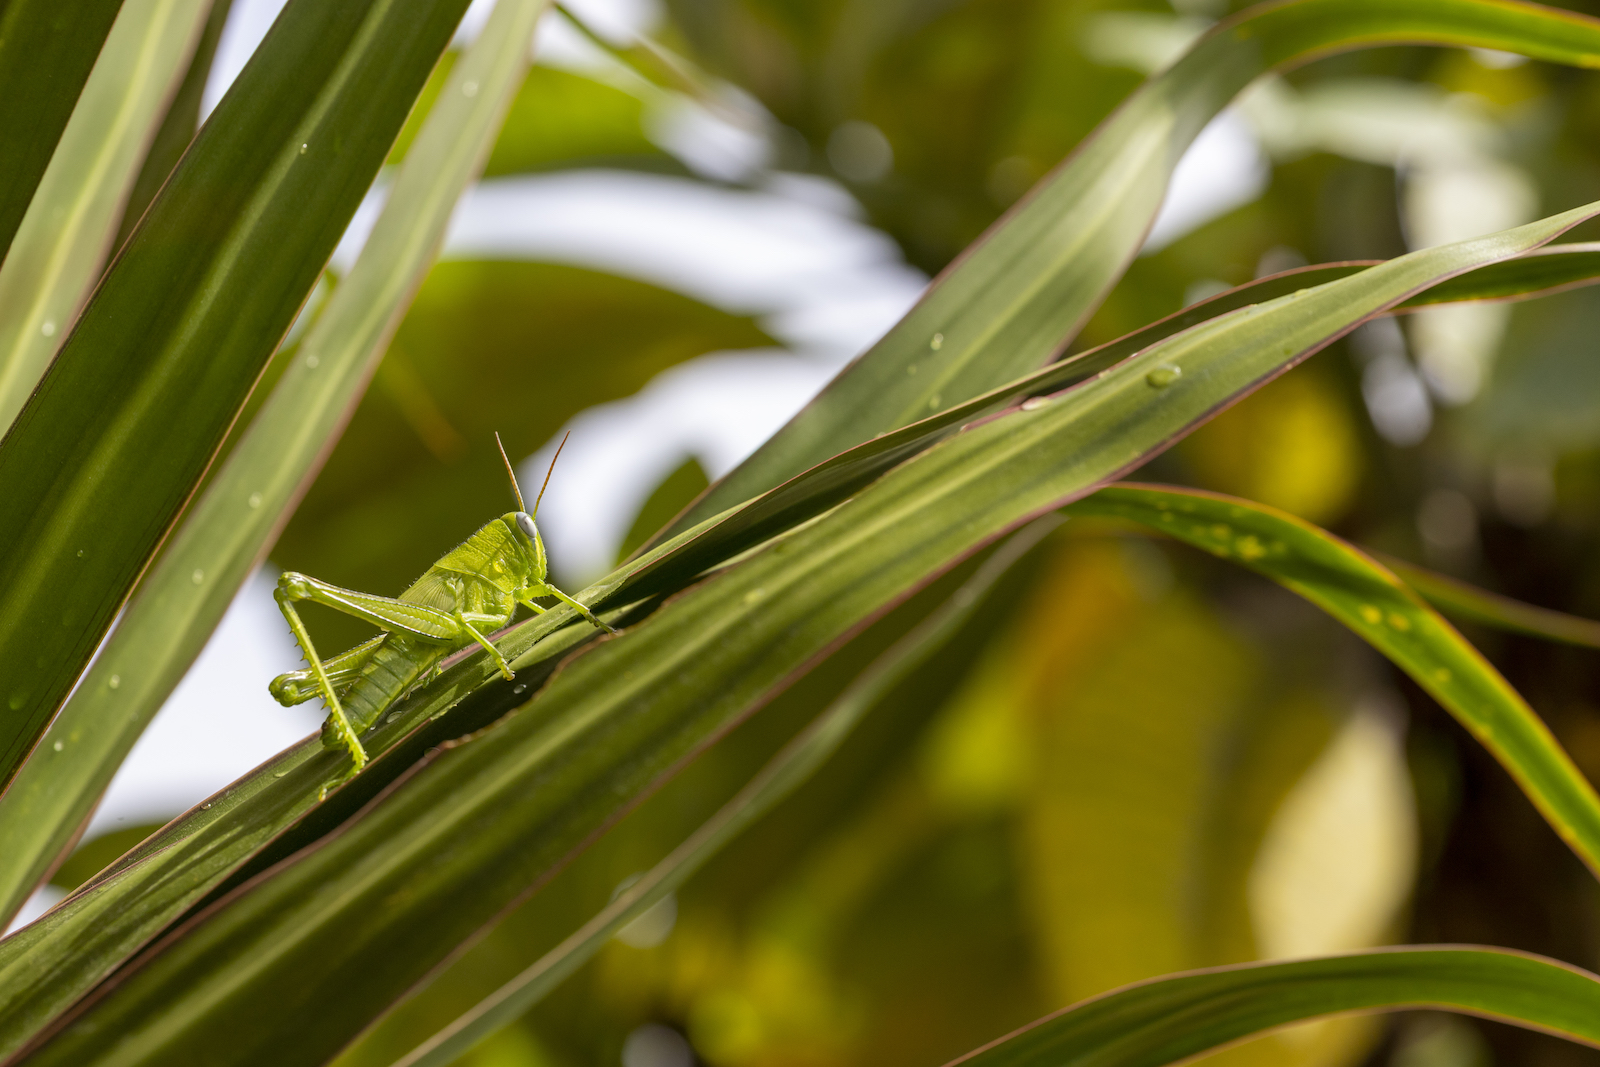 a green grasshopper on a leaf